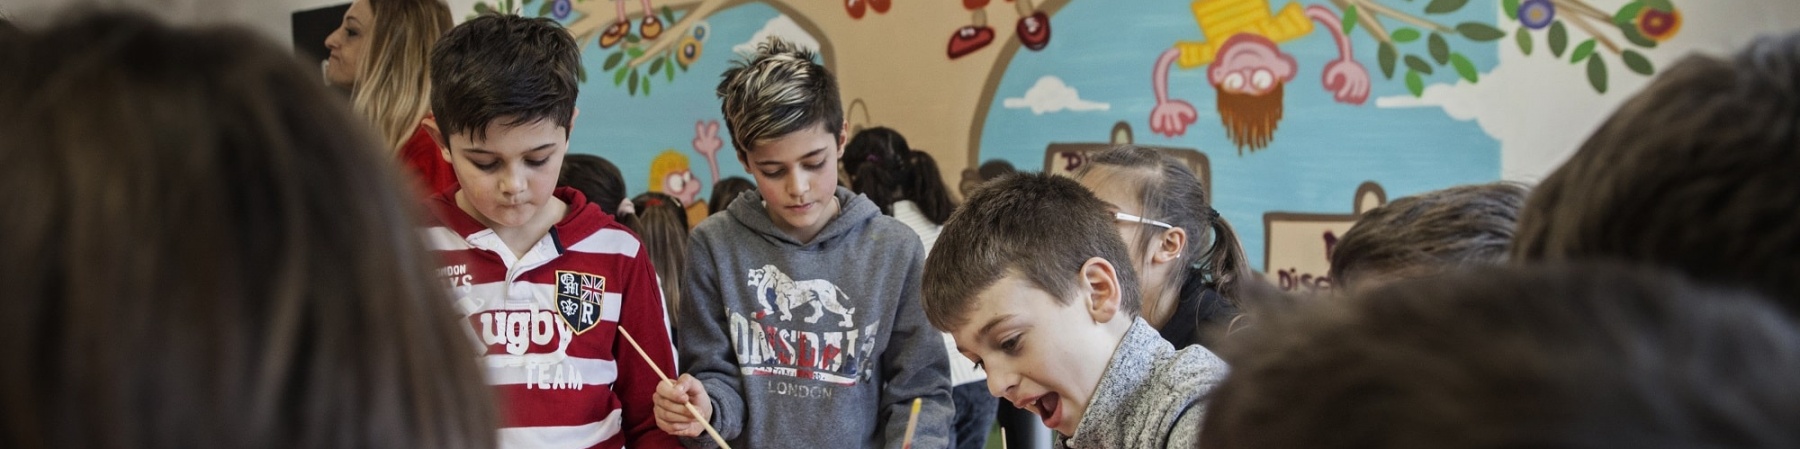 bambini a un tavolo a scuola mentre disegnano insieme con dei pennelli